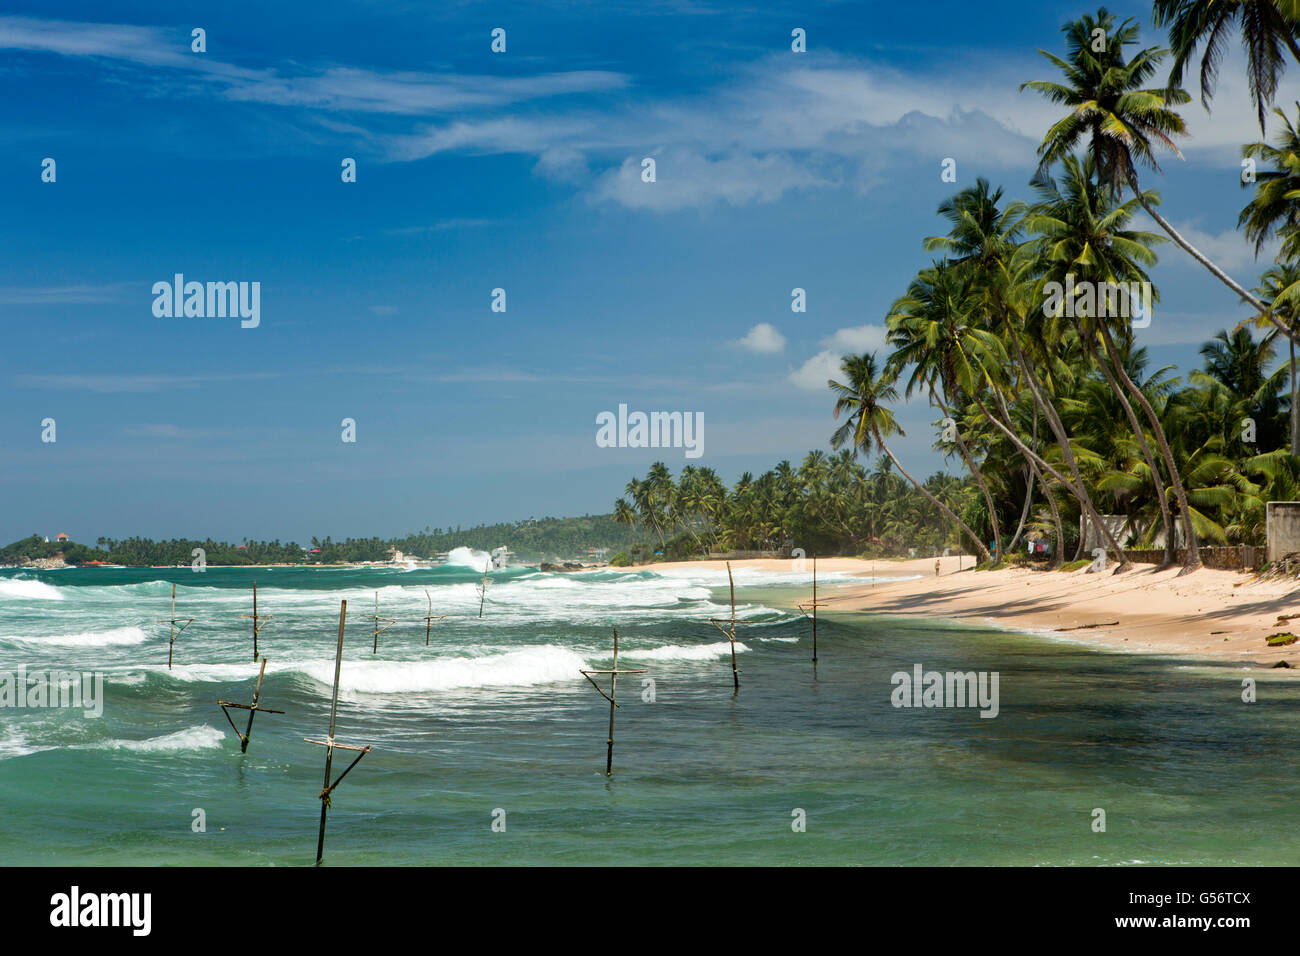 Sri Lanka, Galle Province, Unawatuna, Thalpe, Wijaya, poteaux de pêcheurs sur pilotis dans l'eau Banque D'Images